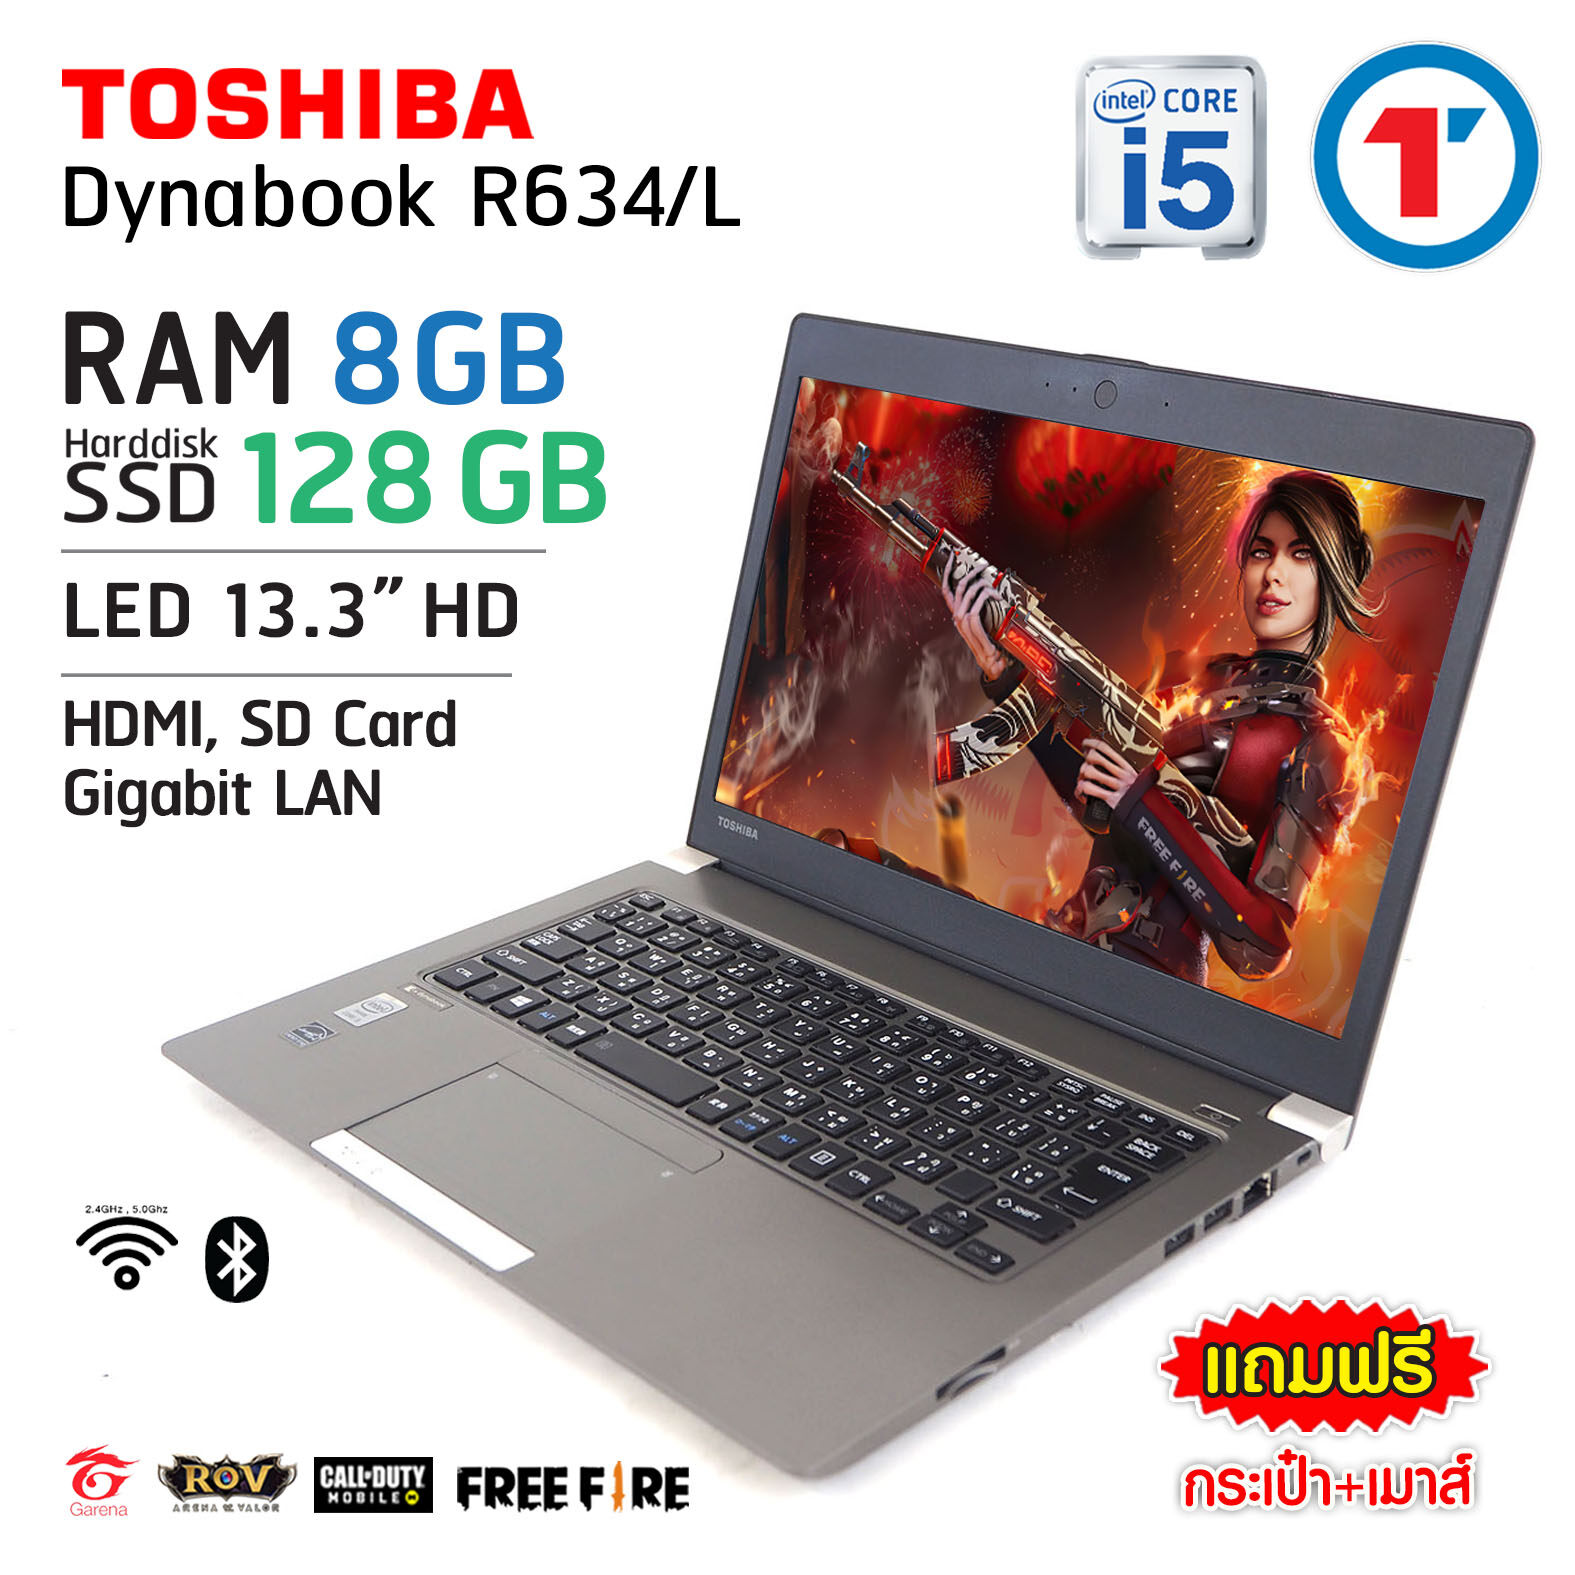 โน๊ตบุ๊ค Toshiba Dynabook R634/L Core i5 GEN 4 - RAM 8 GB SSD 128GB Wifi-BT ในตัว สภาพดี สภาพนางฟ้า! มีประกัน และบริการหลังการขาย By Totalsolution